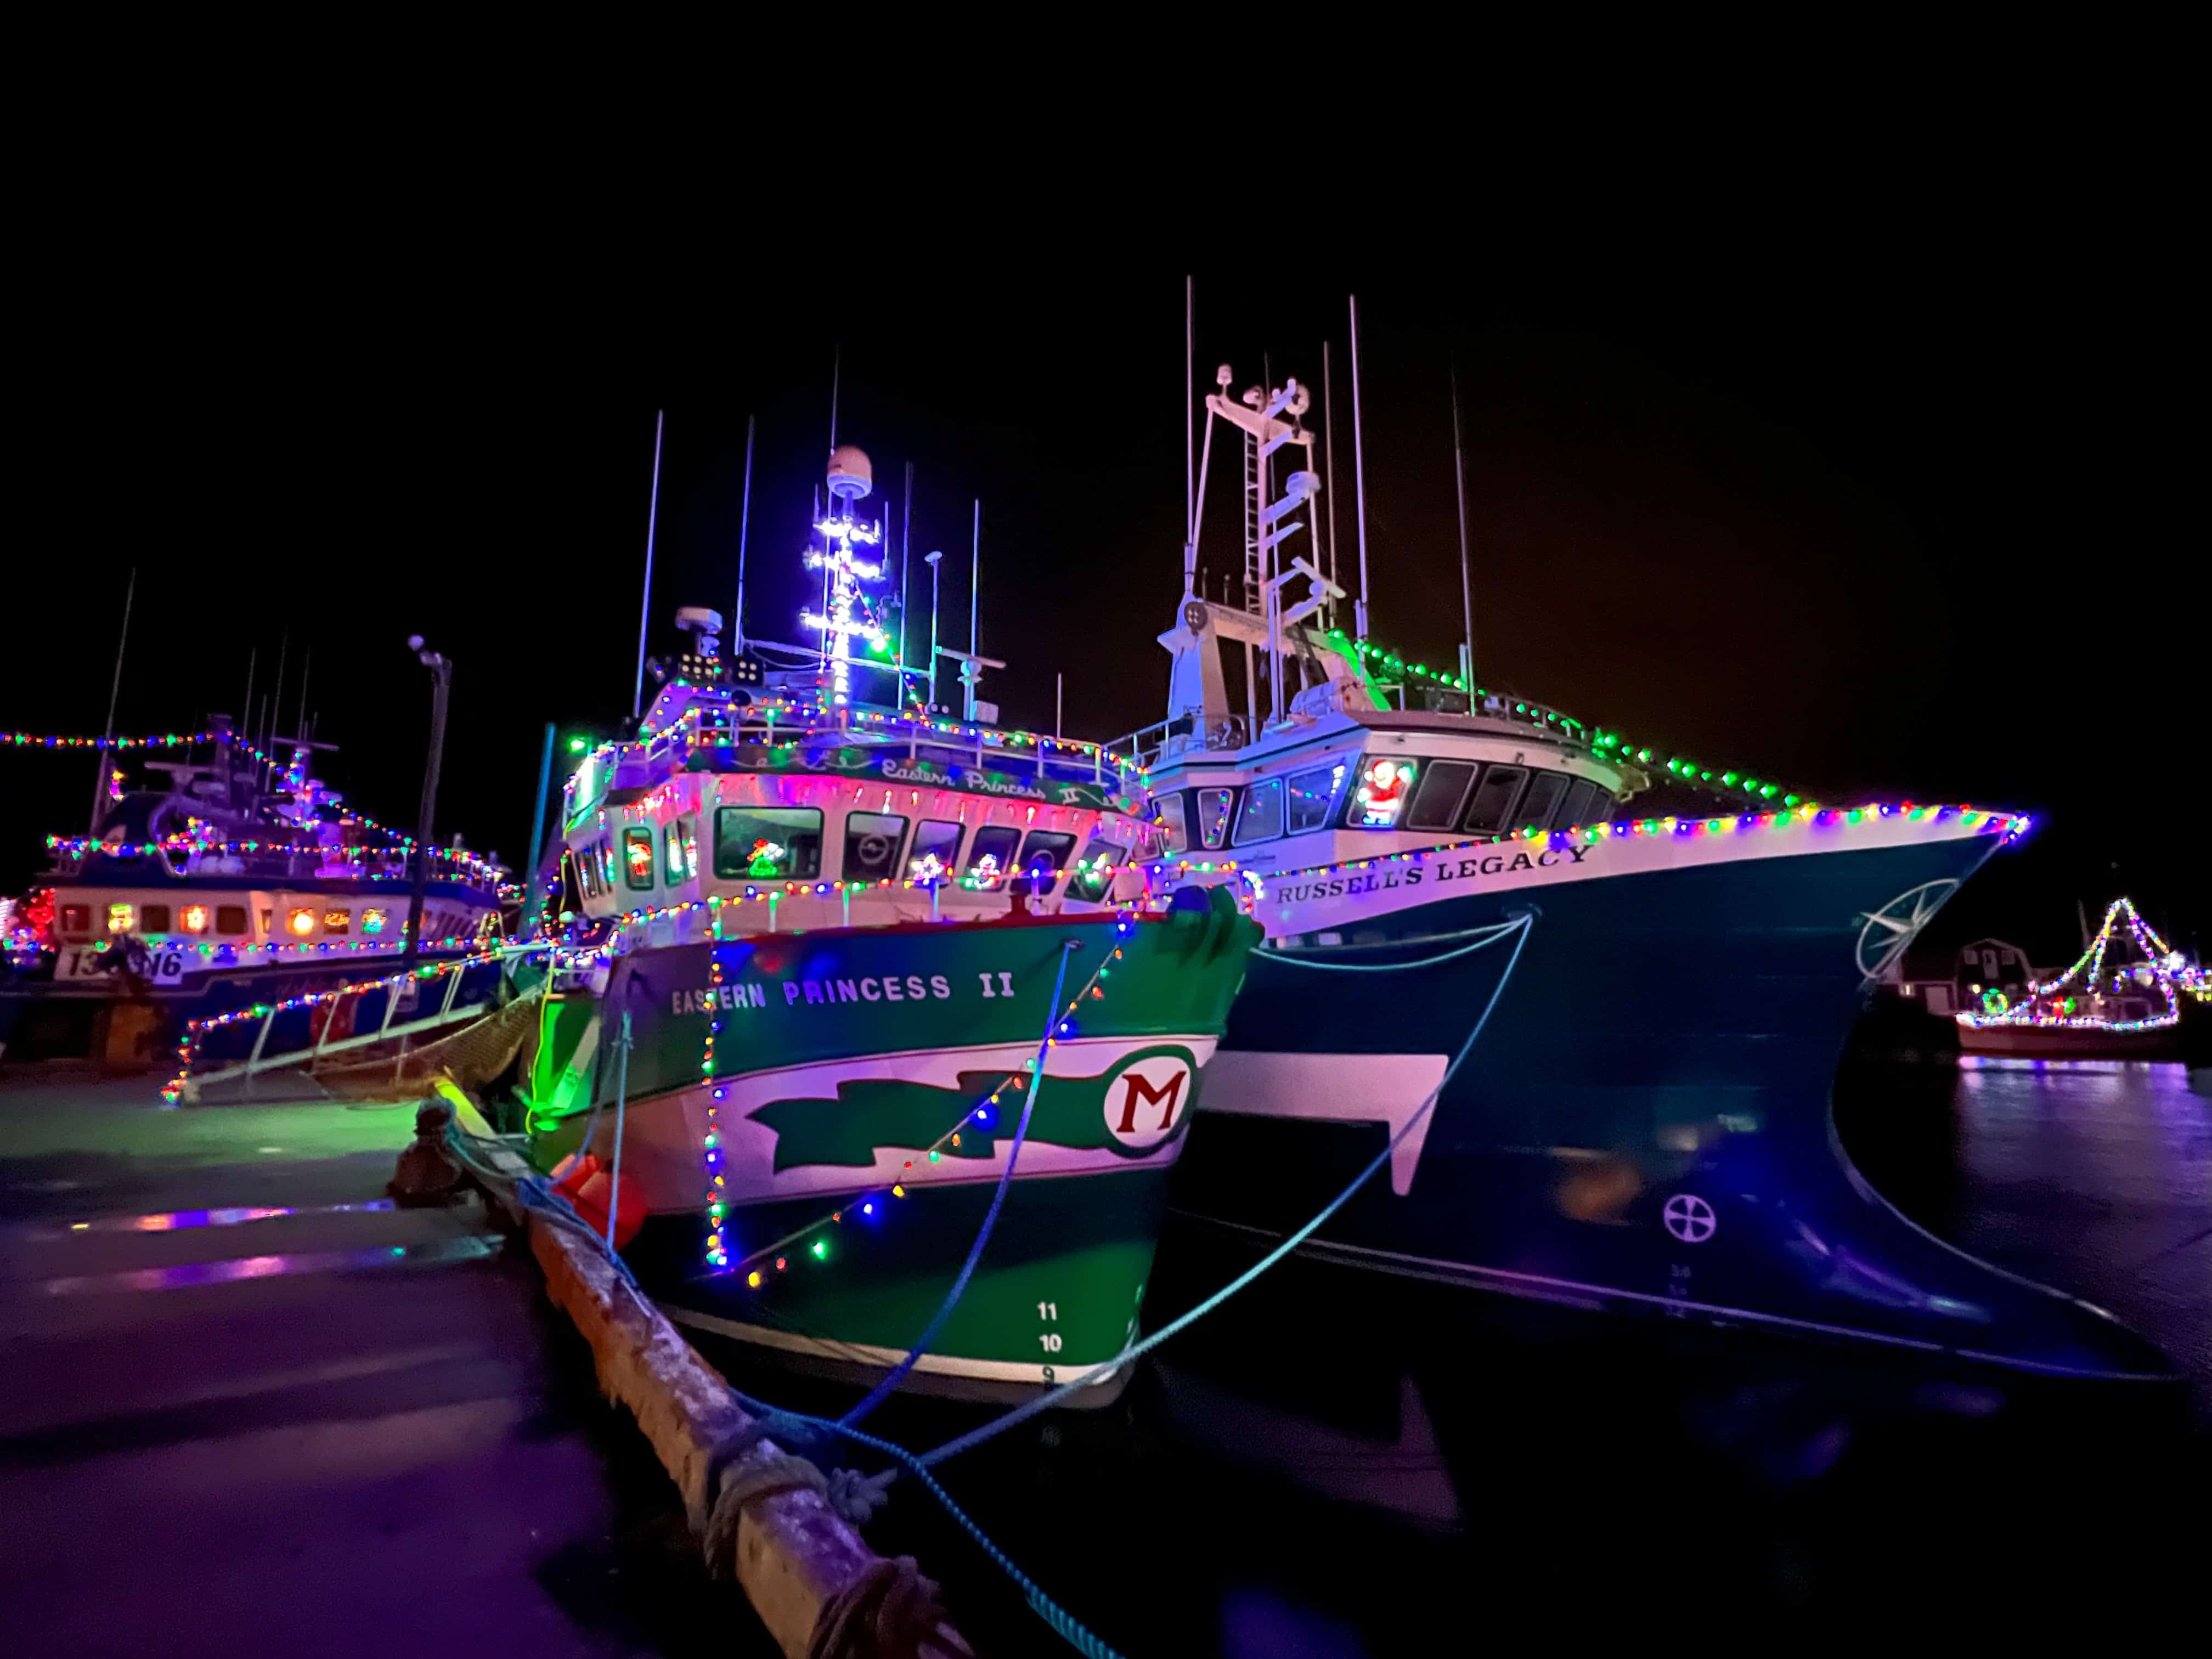 https://www.ehcanadatravel.com/media/com_easysocial/photos/10486/38022/christmas-in-the-harbour-newfoundland-canada-port-de-grave-boats_original.jpg